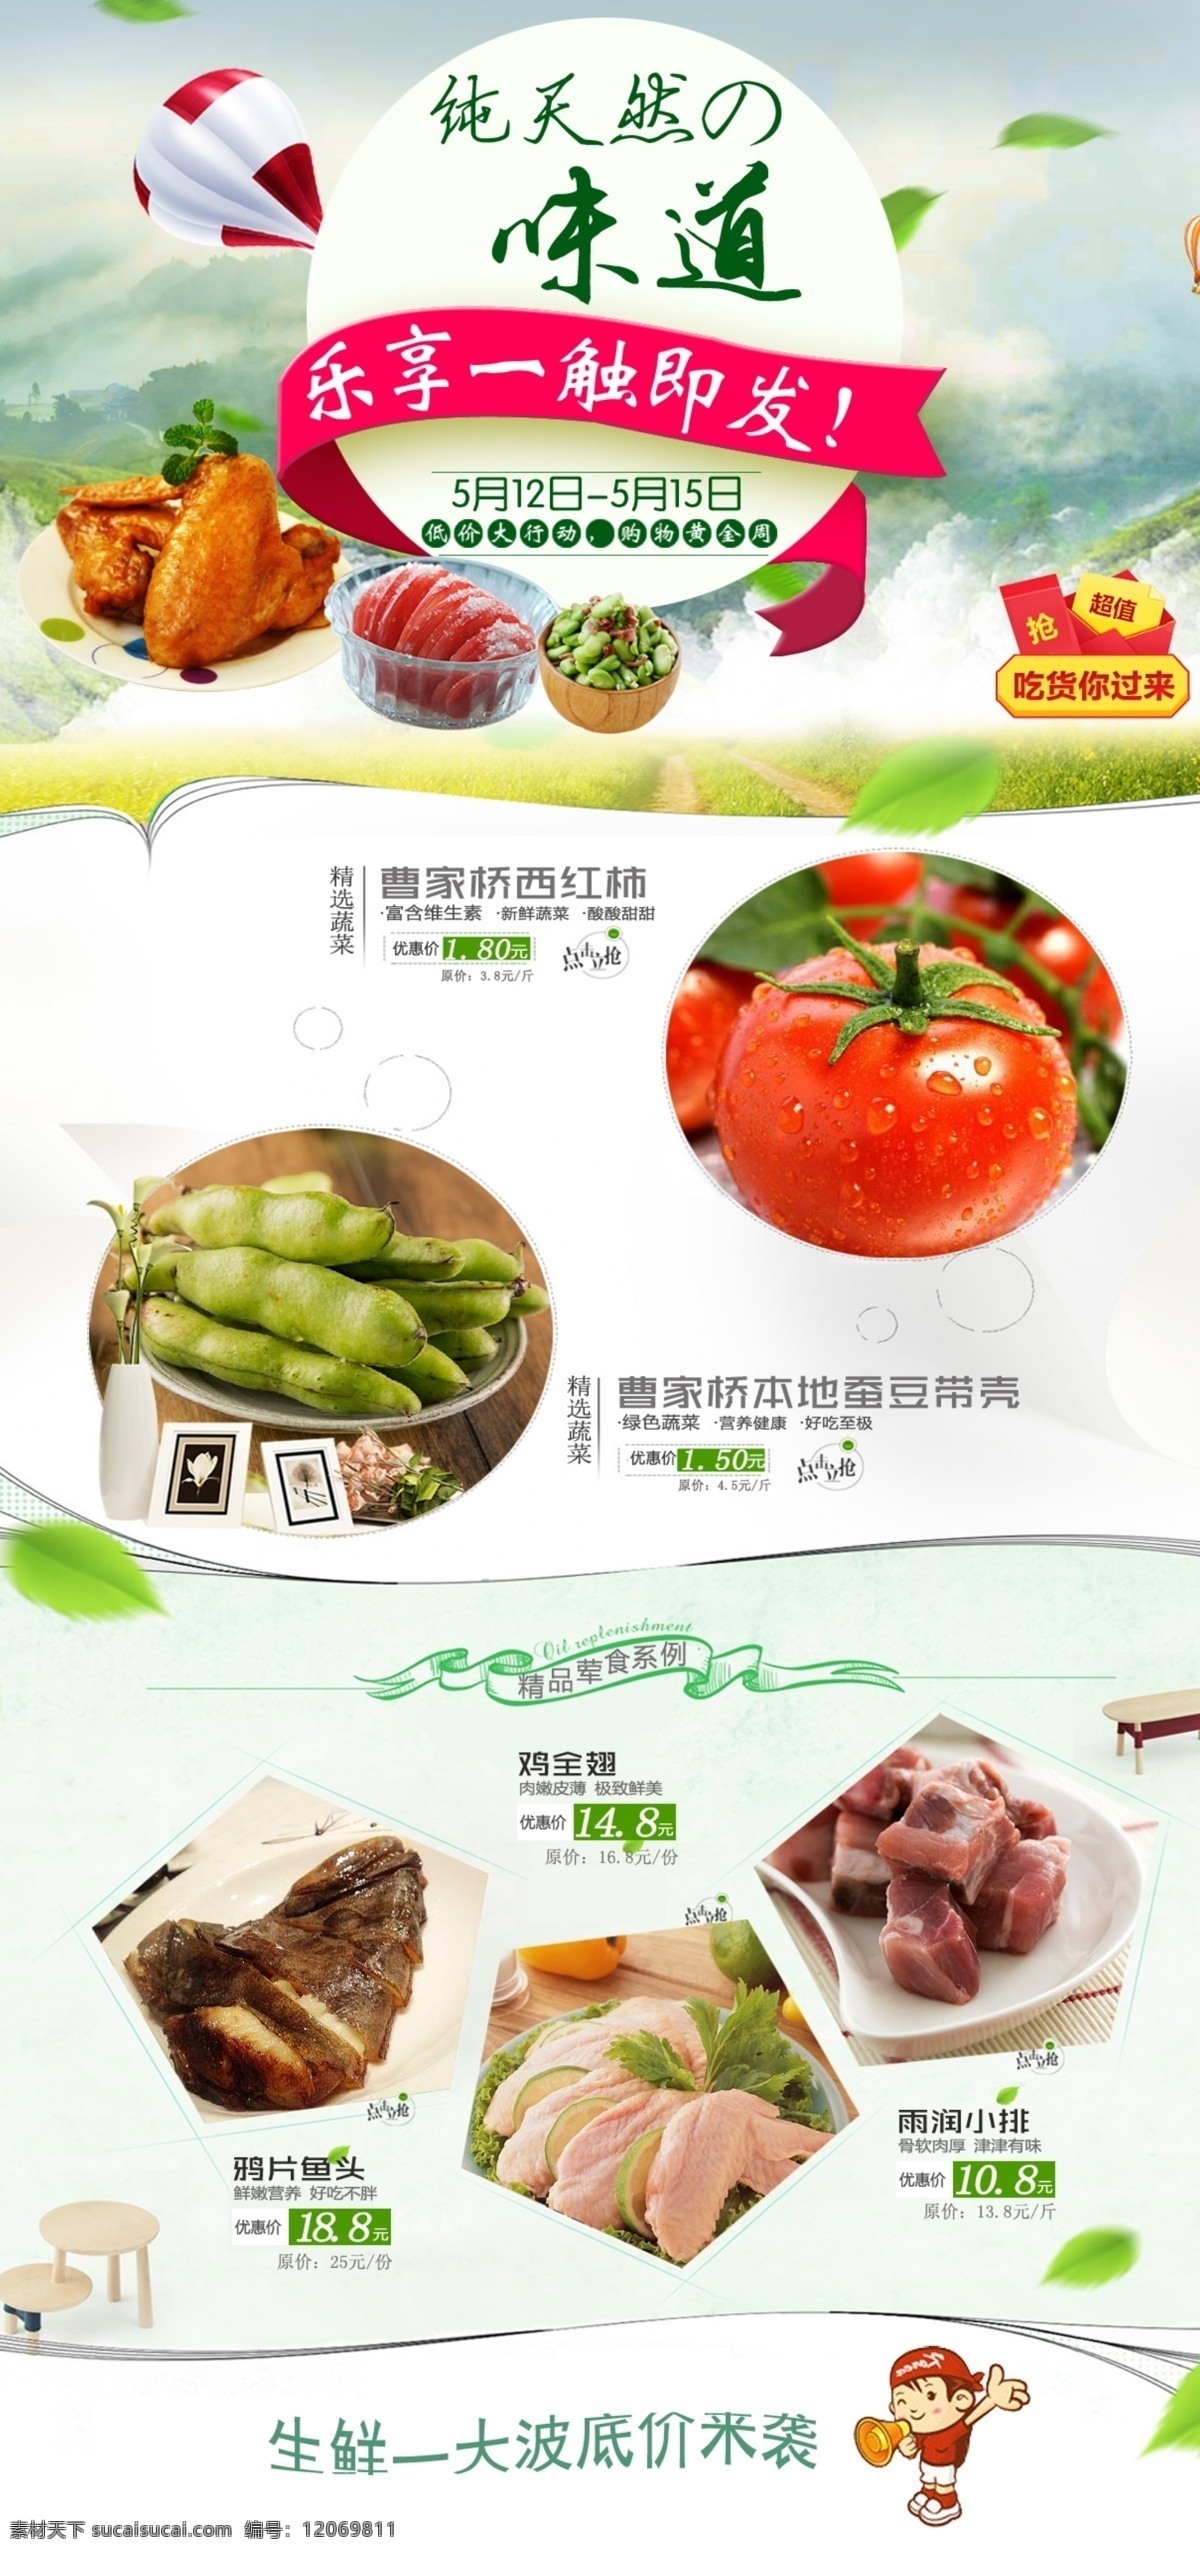 美食 生鲜 美食节 促销 特价 海报 淘宝界面设计 淘宝 广告 banner